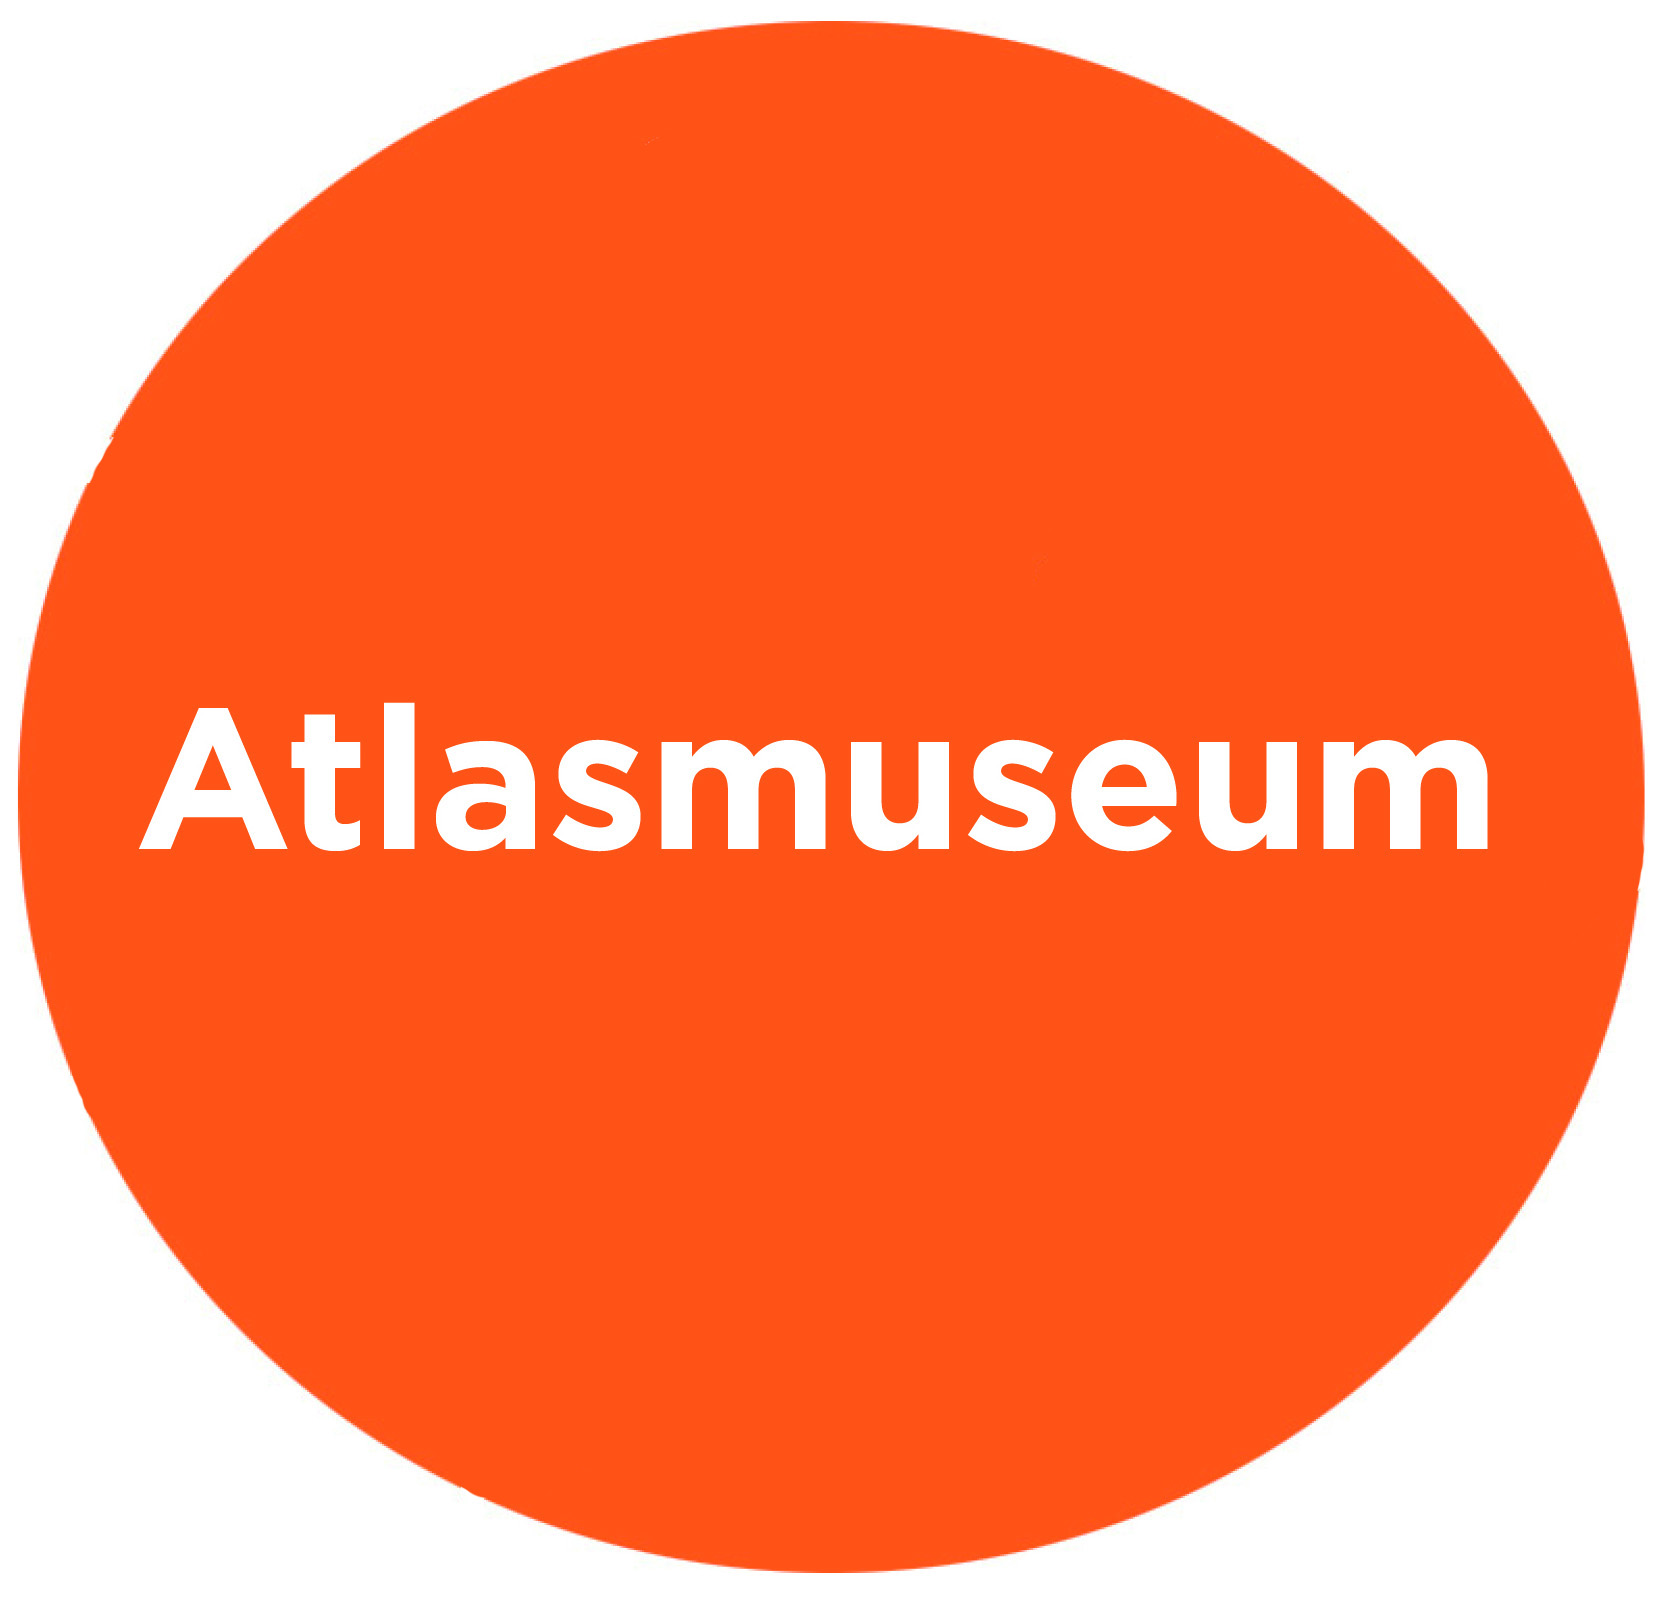 ATLAS MUSEUM